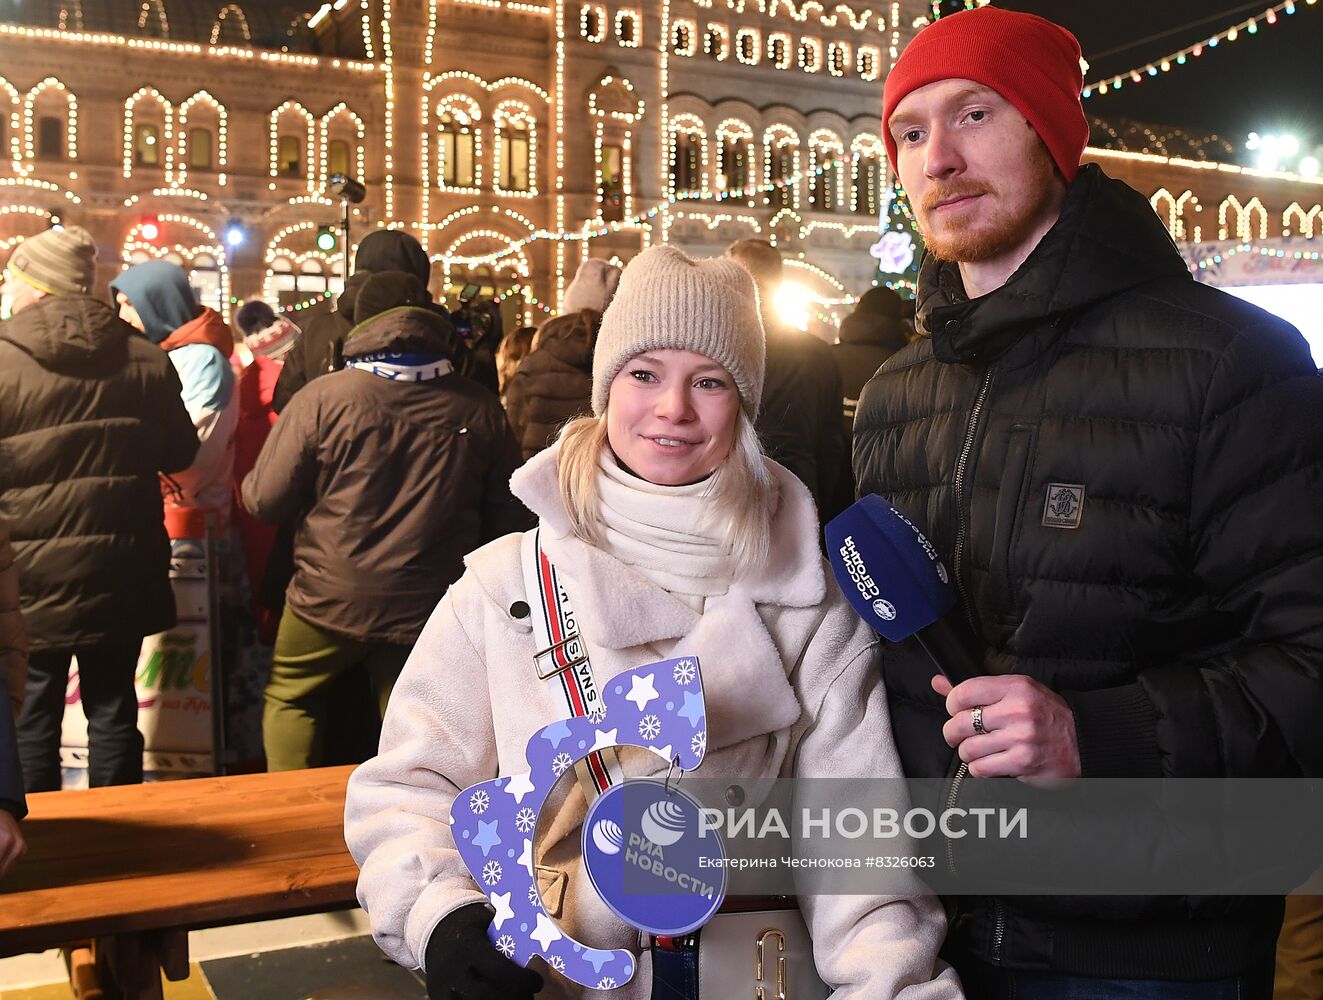 Открытие ГУМ-Катка и ГУМ-Ярмарки на Красной площади 